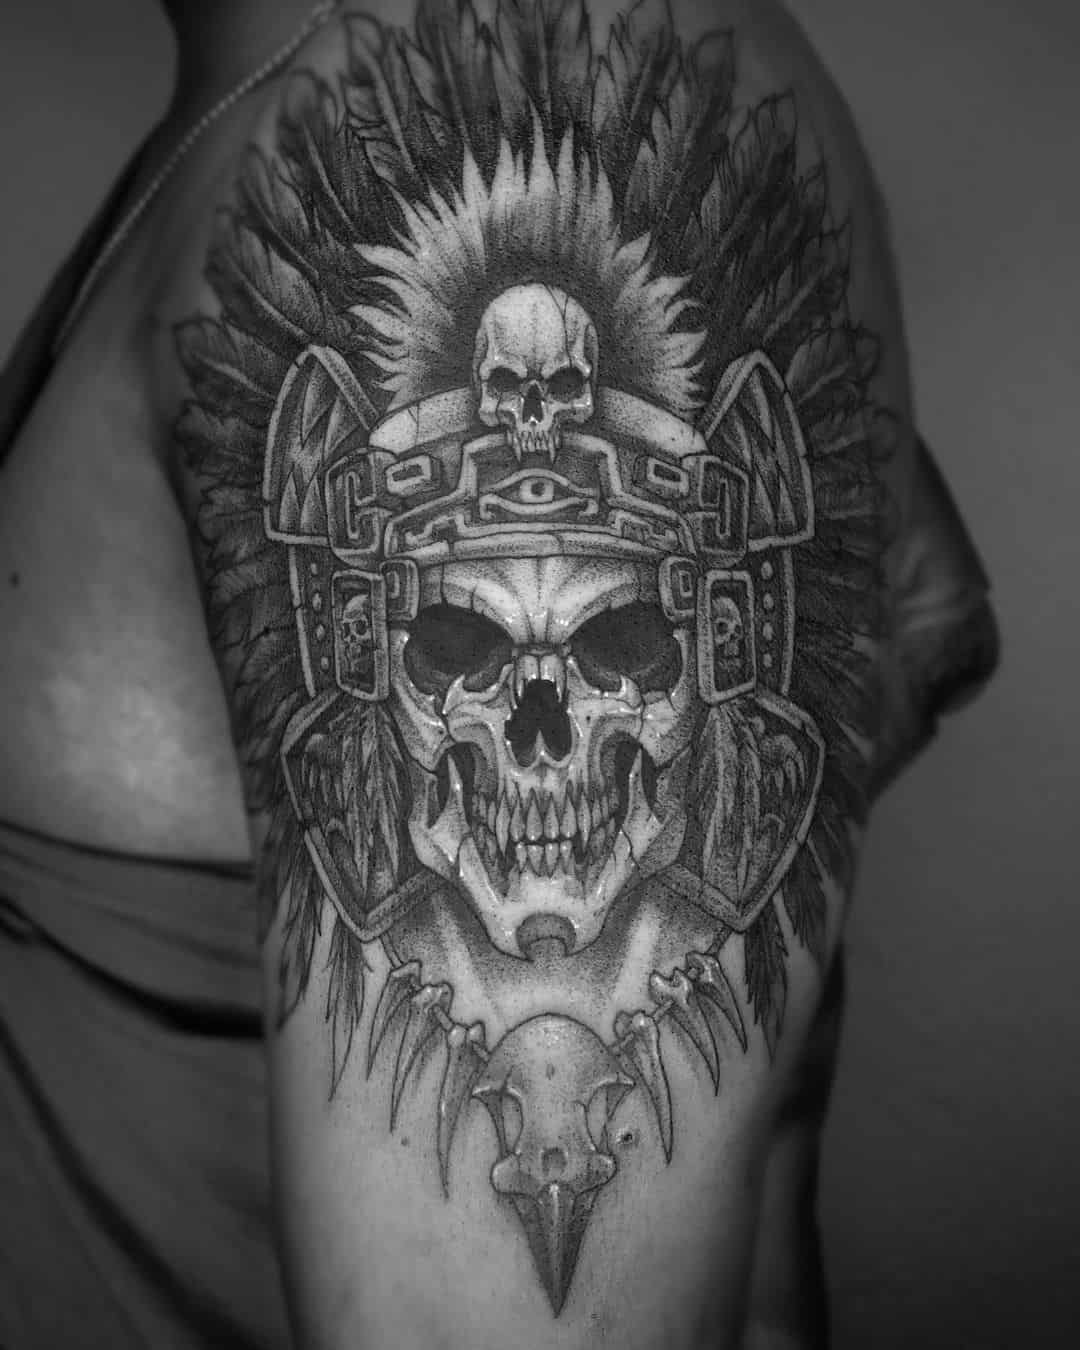 Skull crown tattoo ideas